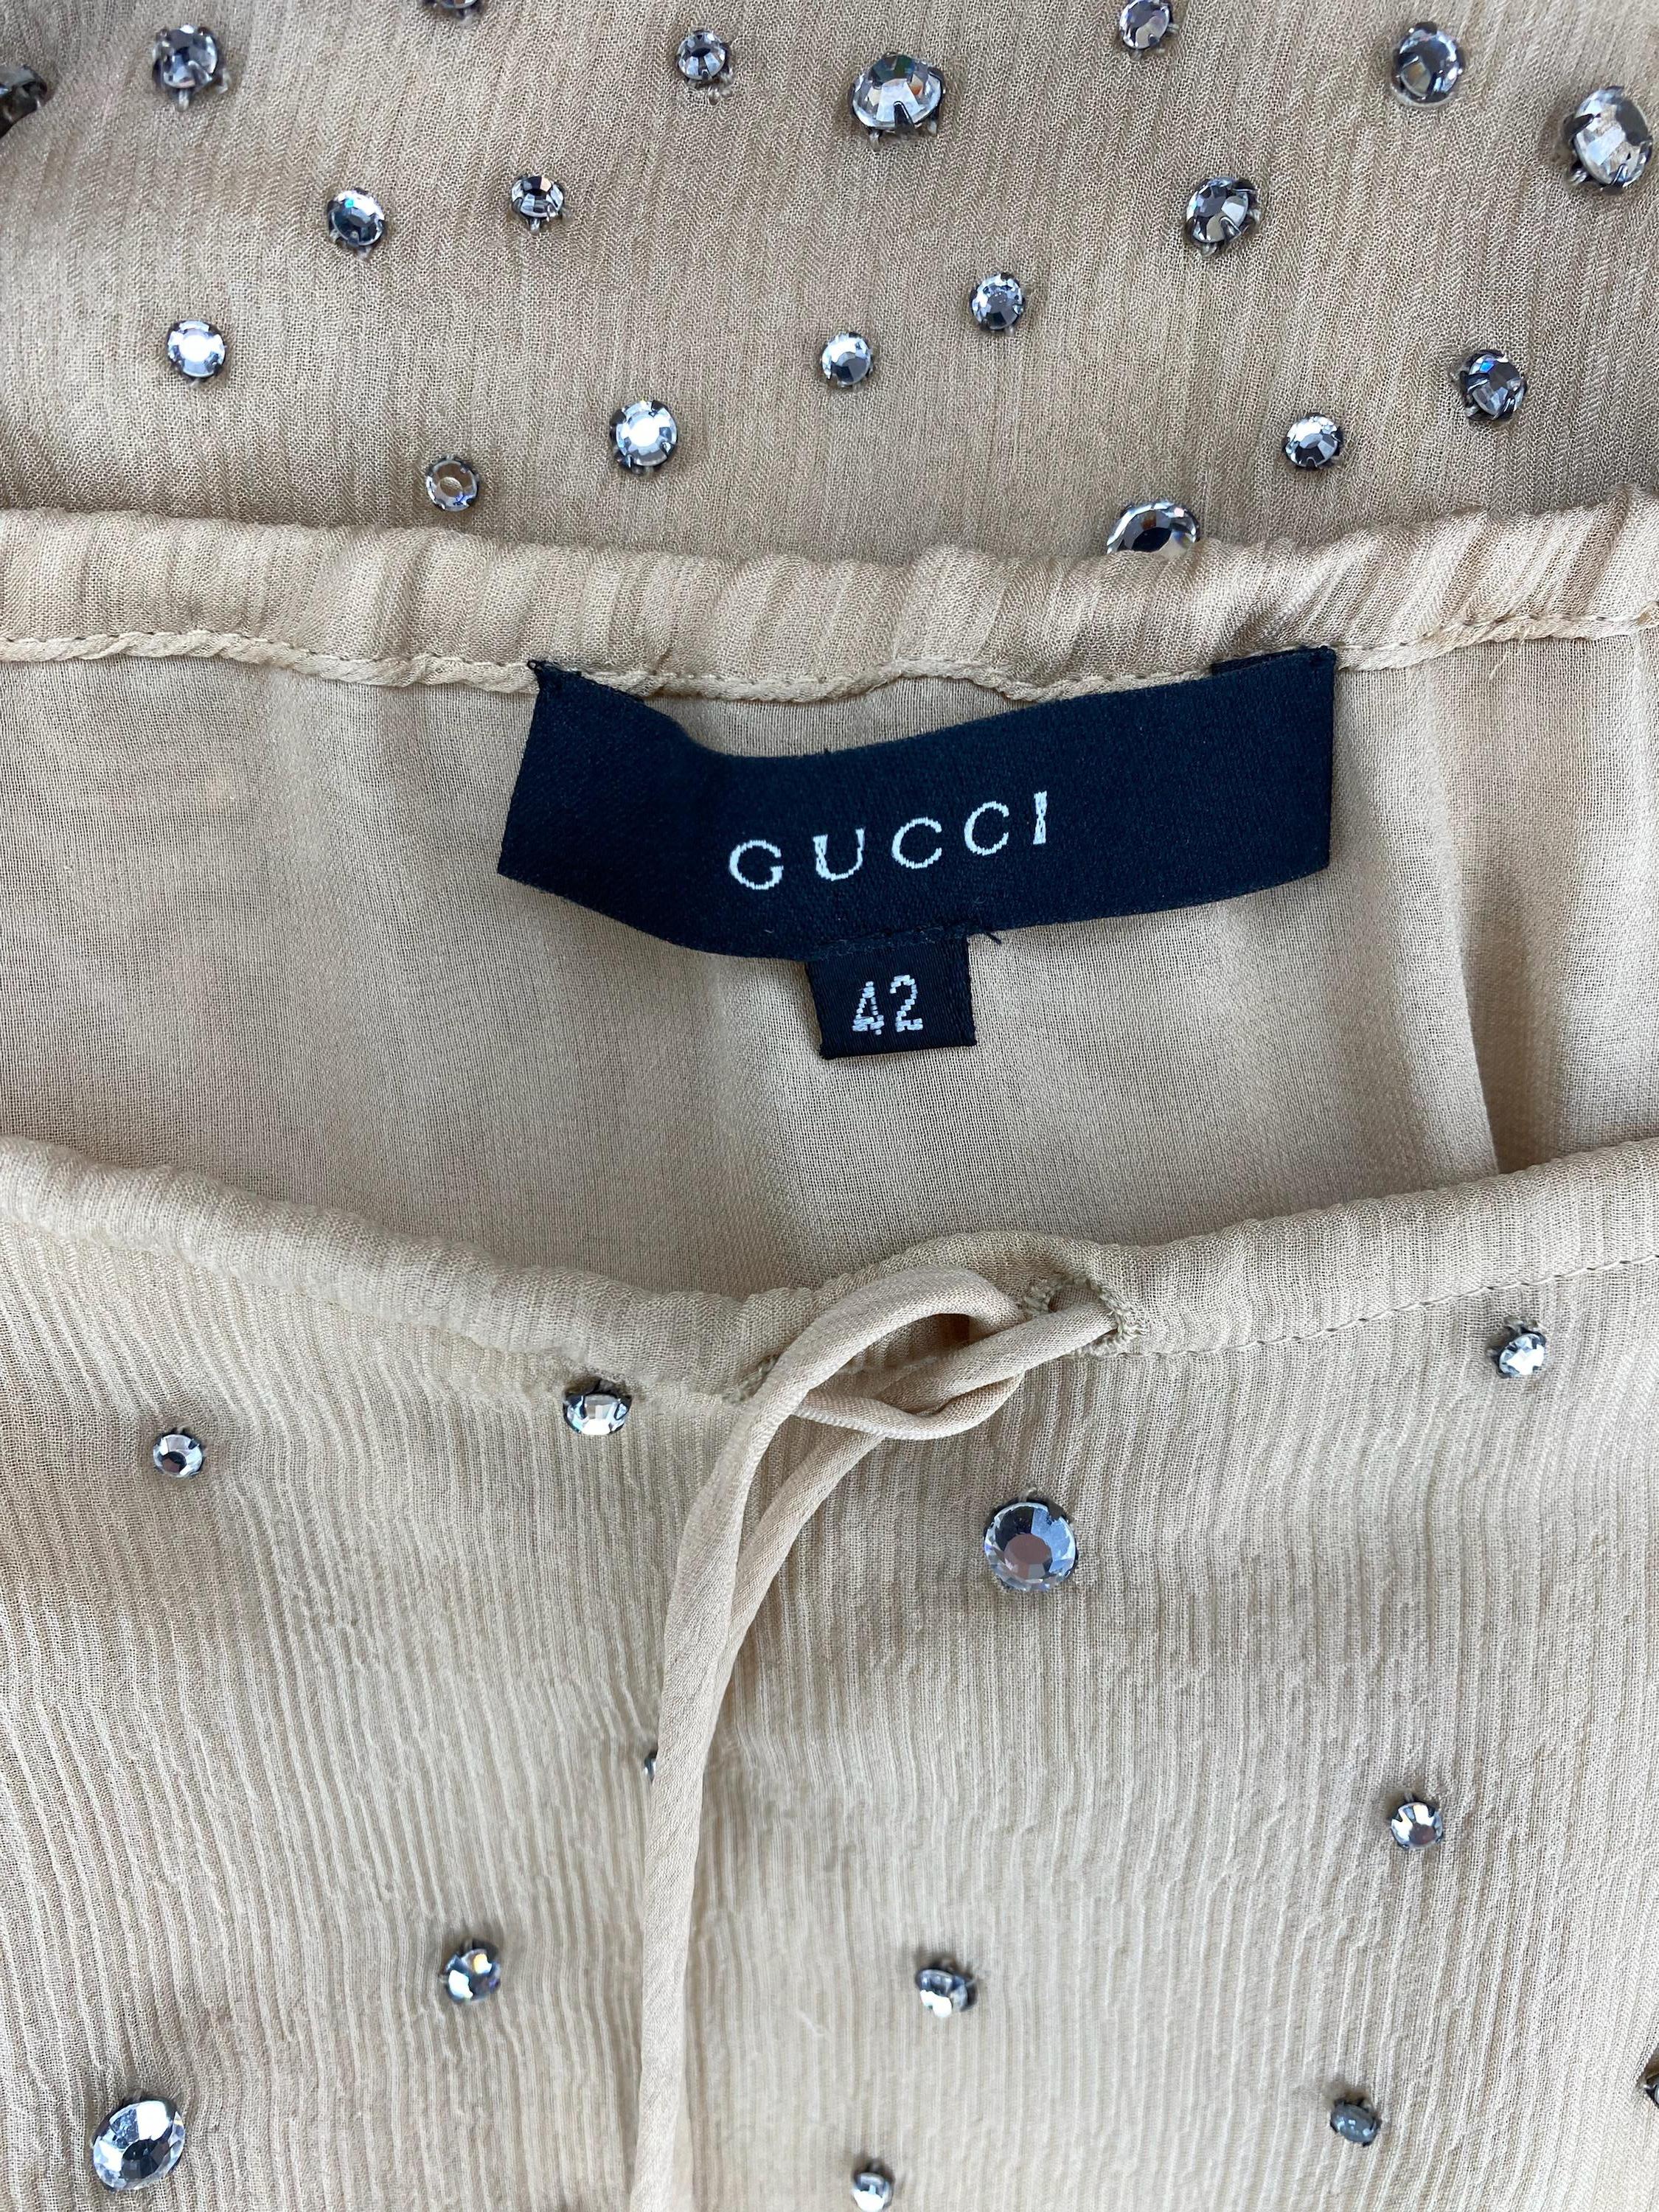 S/S 2000 Gucci by Tom Ford Rhinestone Sheer Beige Crepe Silk Skirt 2